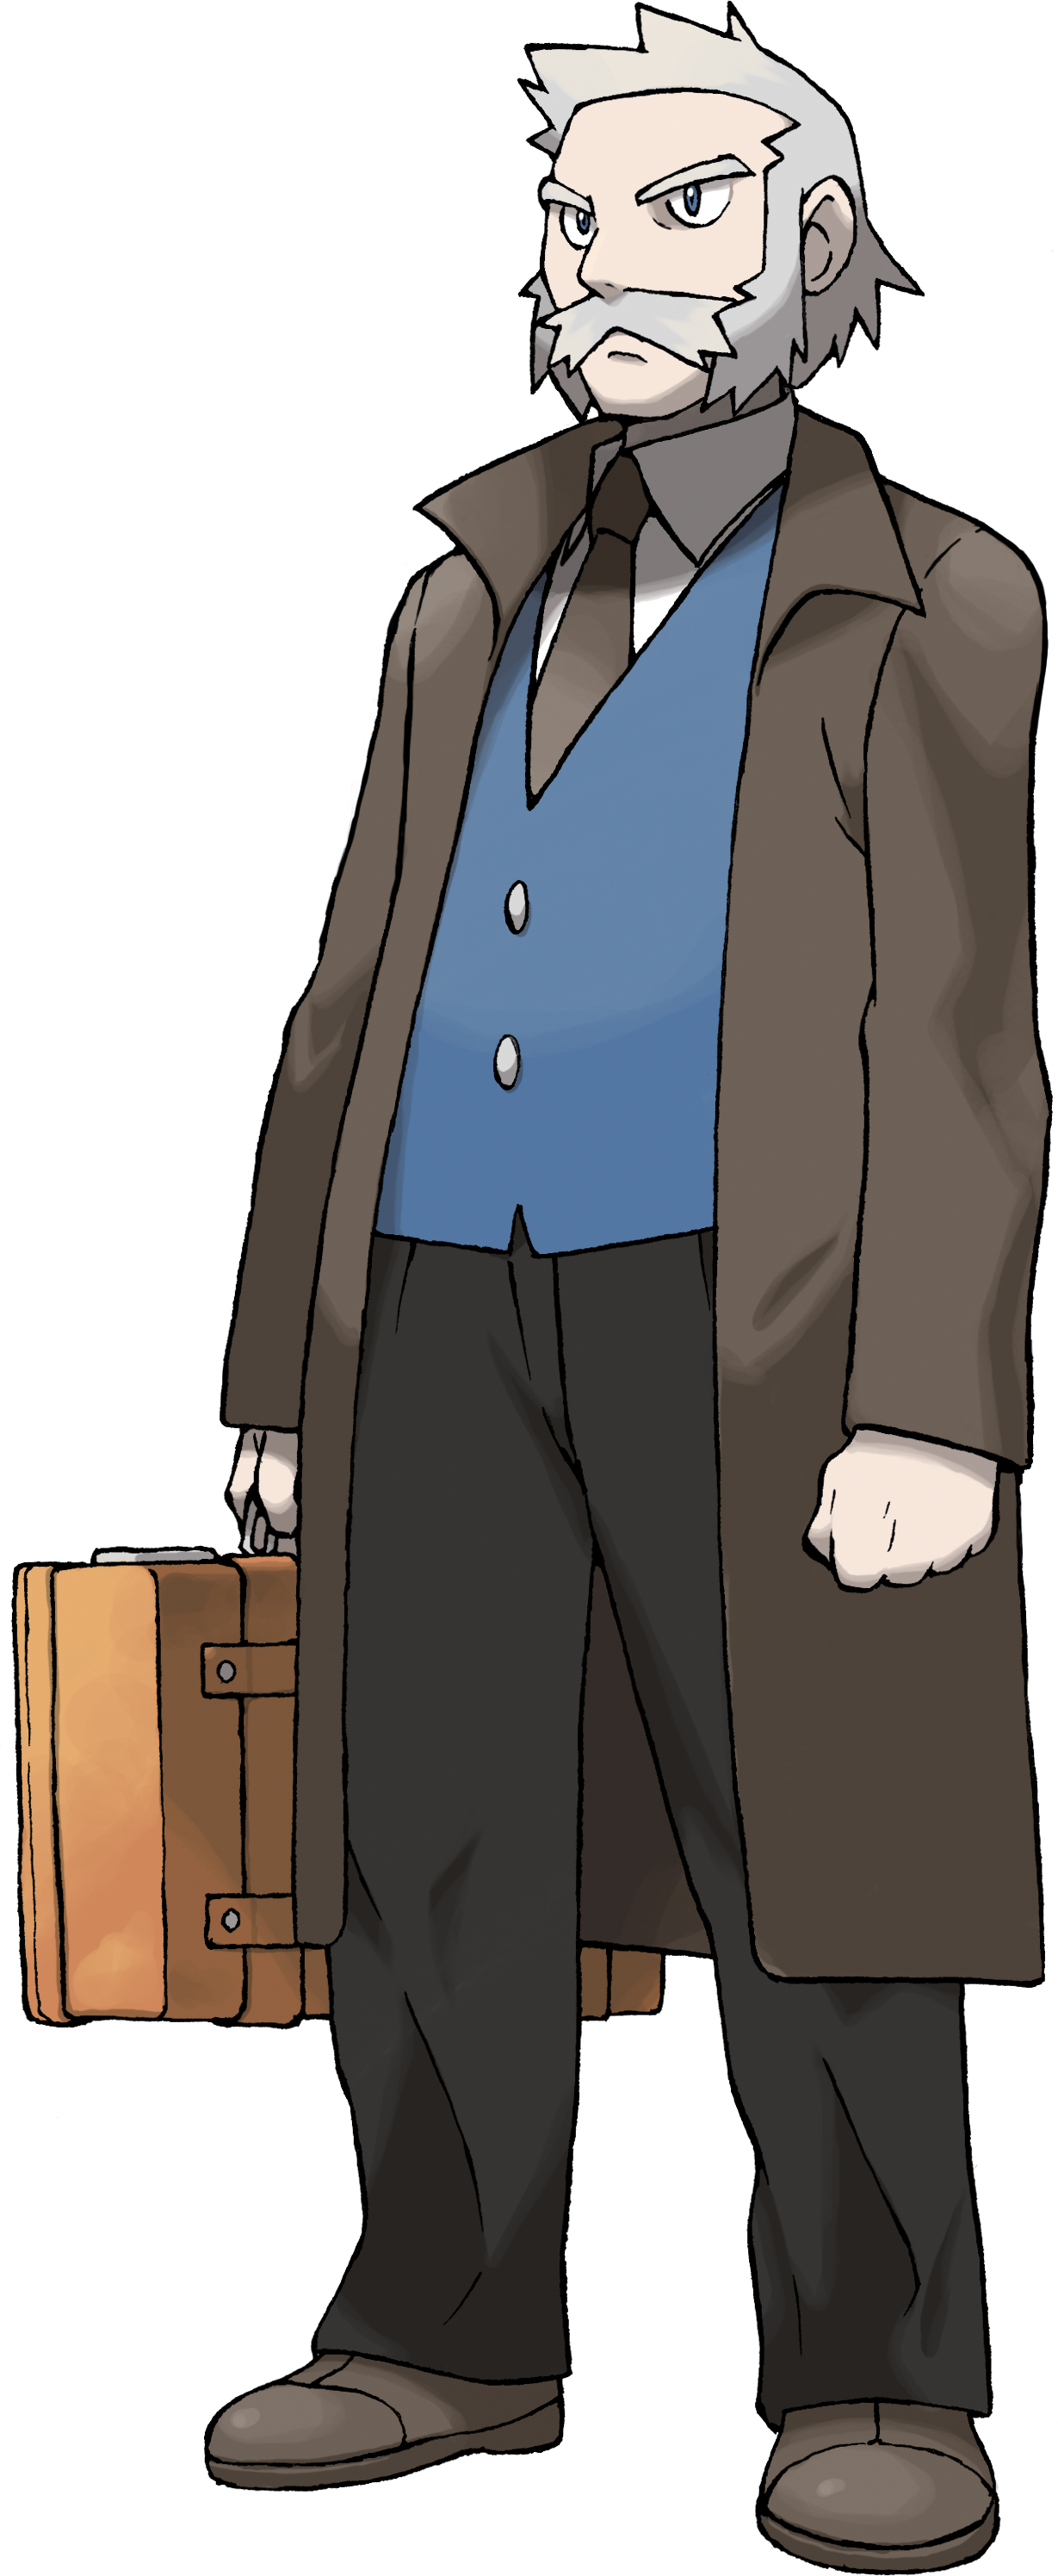 Professor Rowan | Pokémon Wiki | FANDOM powered by Wikia